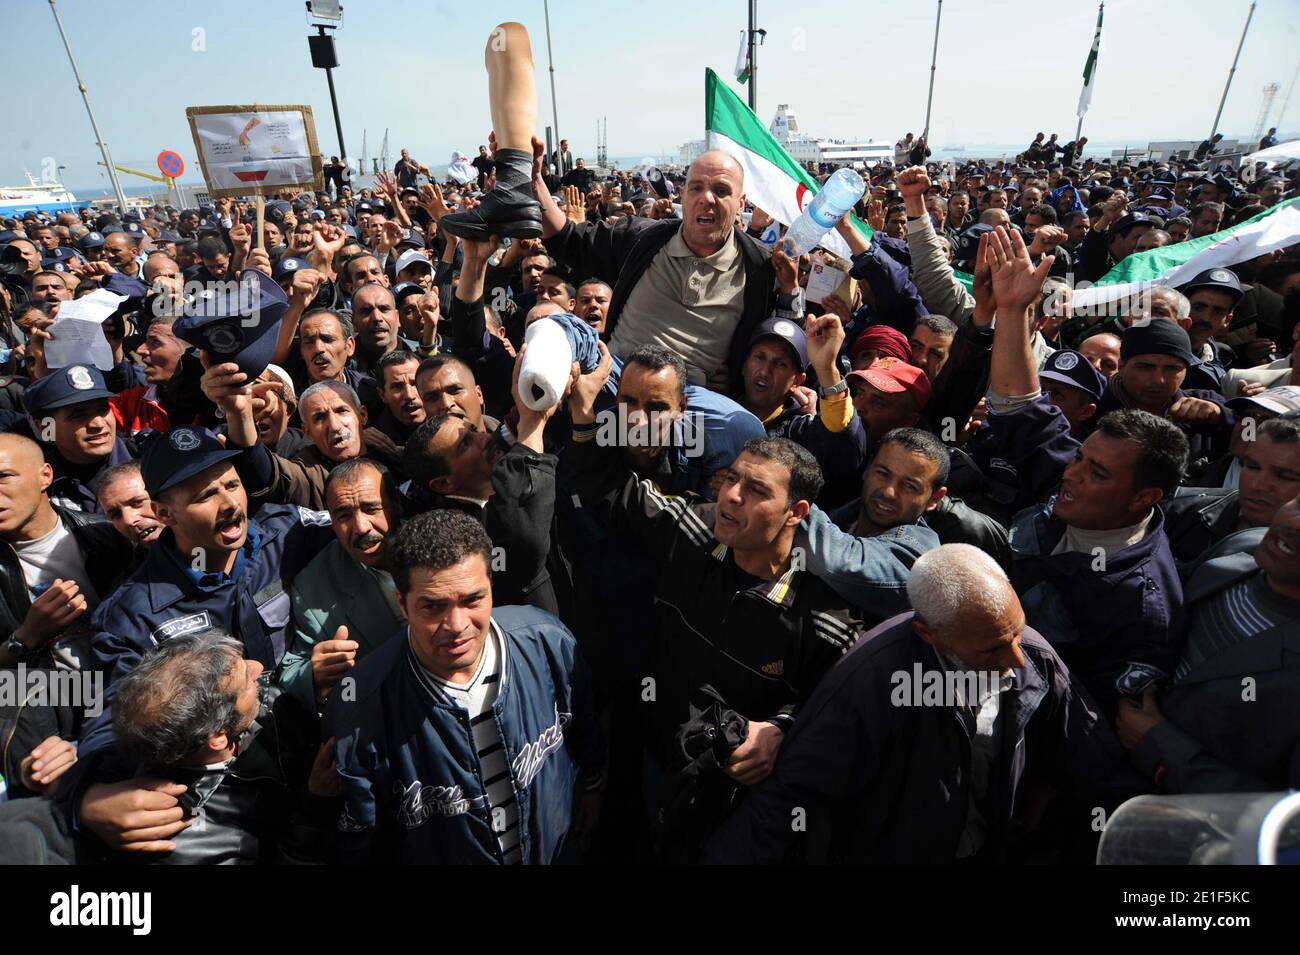 Protesta della polizia comunitaria e gridano slogan durante una manifestazione ad Algeri, Algeria, il 7 marzo 2011. Il governo ha detto che disband la propria forza e i funzionari vogliono che il governo soddisfi le loro richieste di pensioni. I manifestanti, stimati dagli organizzatori a più di 10,000, si sono sfidati a vietare le manifestazioni nella capitale e hanno spinto attraverso diversi cordoni di polizia a spostarsi da Piazza Martiri all'Assemblea Nazionale. I manifestanti, stimati dagli organizzatori a più di 10,000, si sono sfidati a vietare le manifestazioni nella capitale e hanno spinto attraverso diversi cordoni di polizia a muoversi Foto Stock